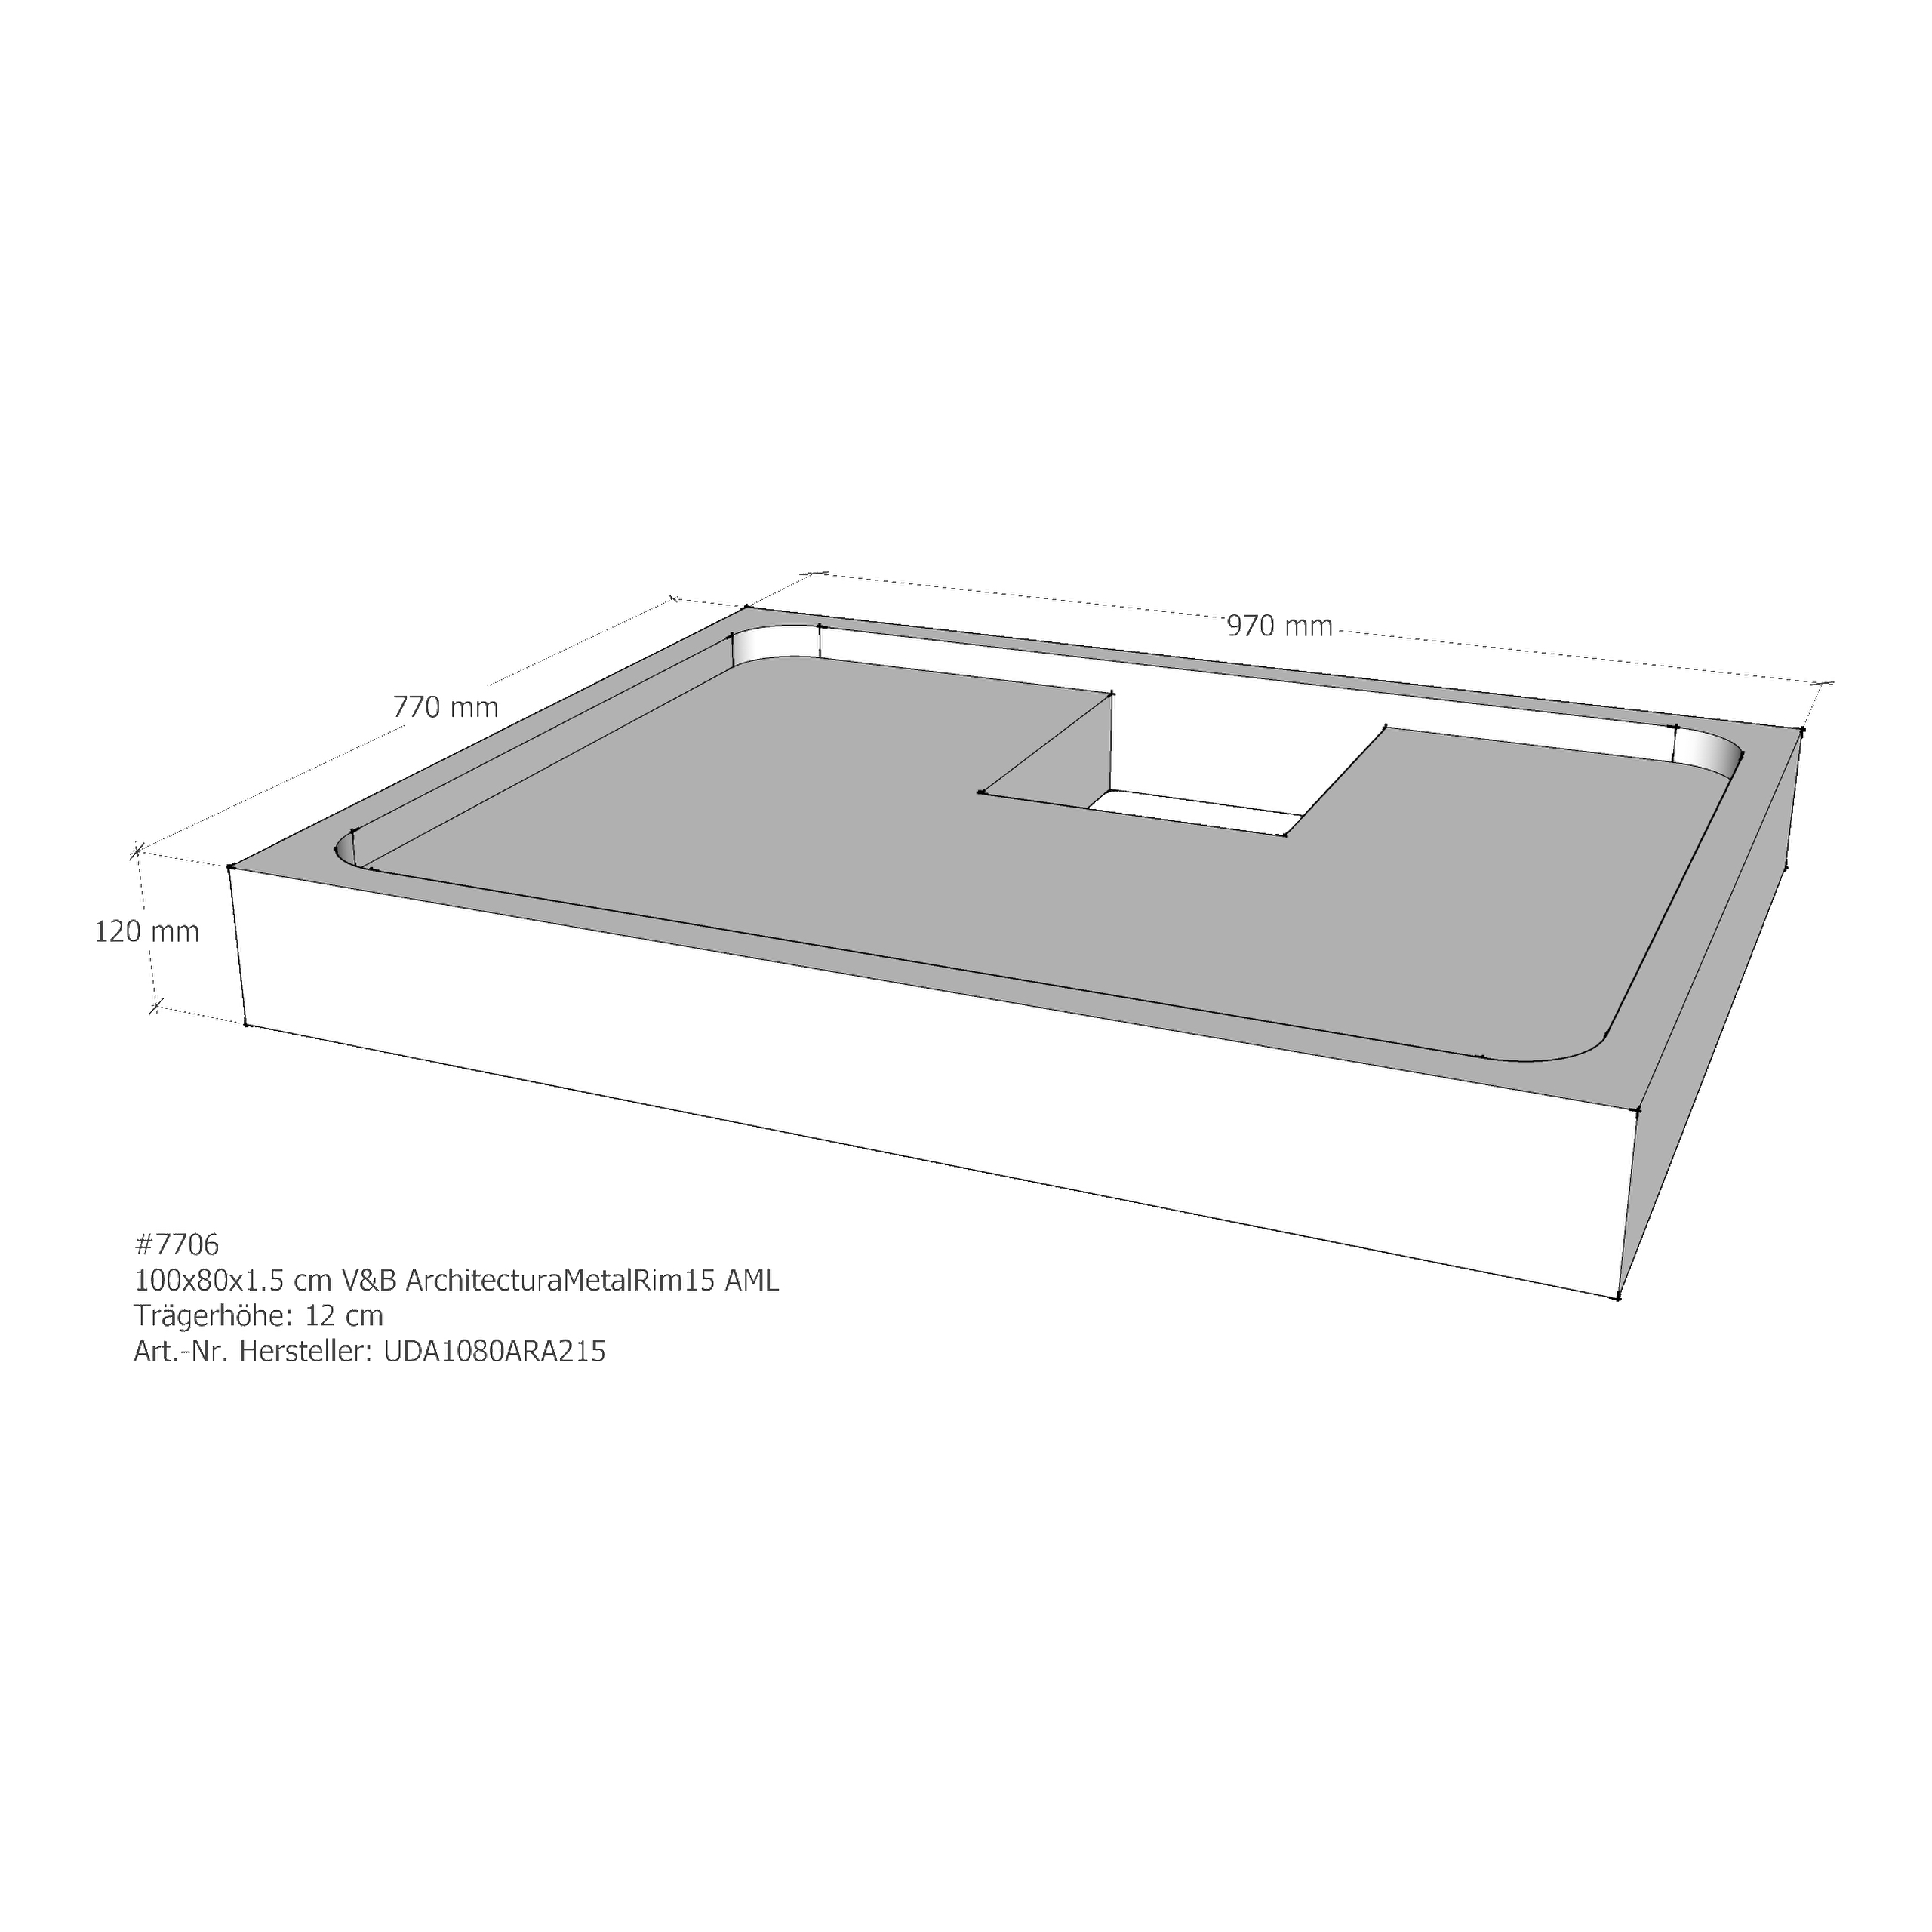 Duschwannenträger für Villeroy & Boch ArchitecturaMetalRim15 100 × 80 × 1,5 cm